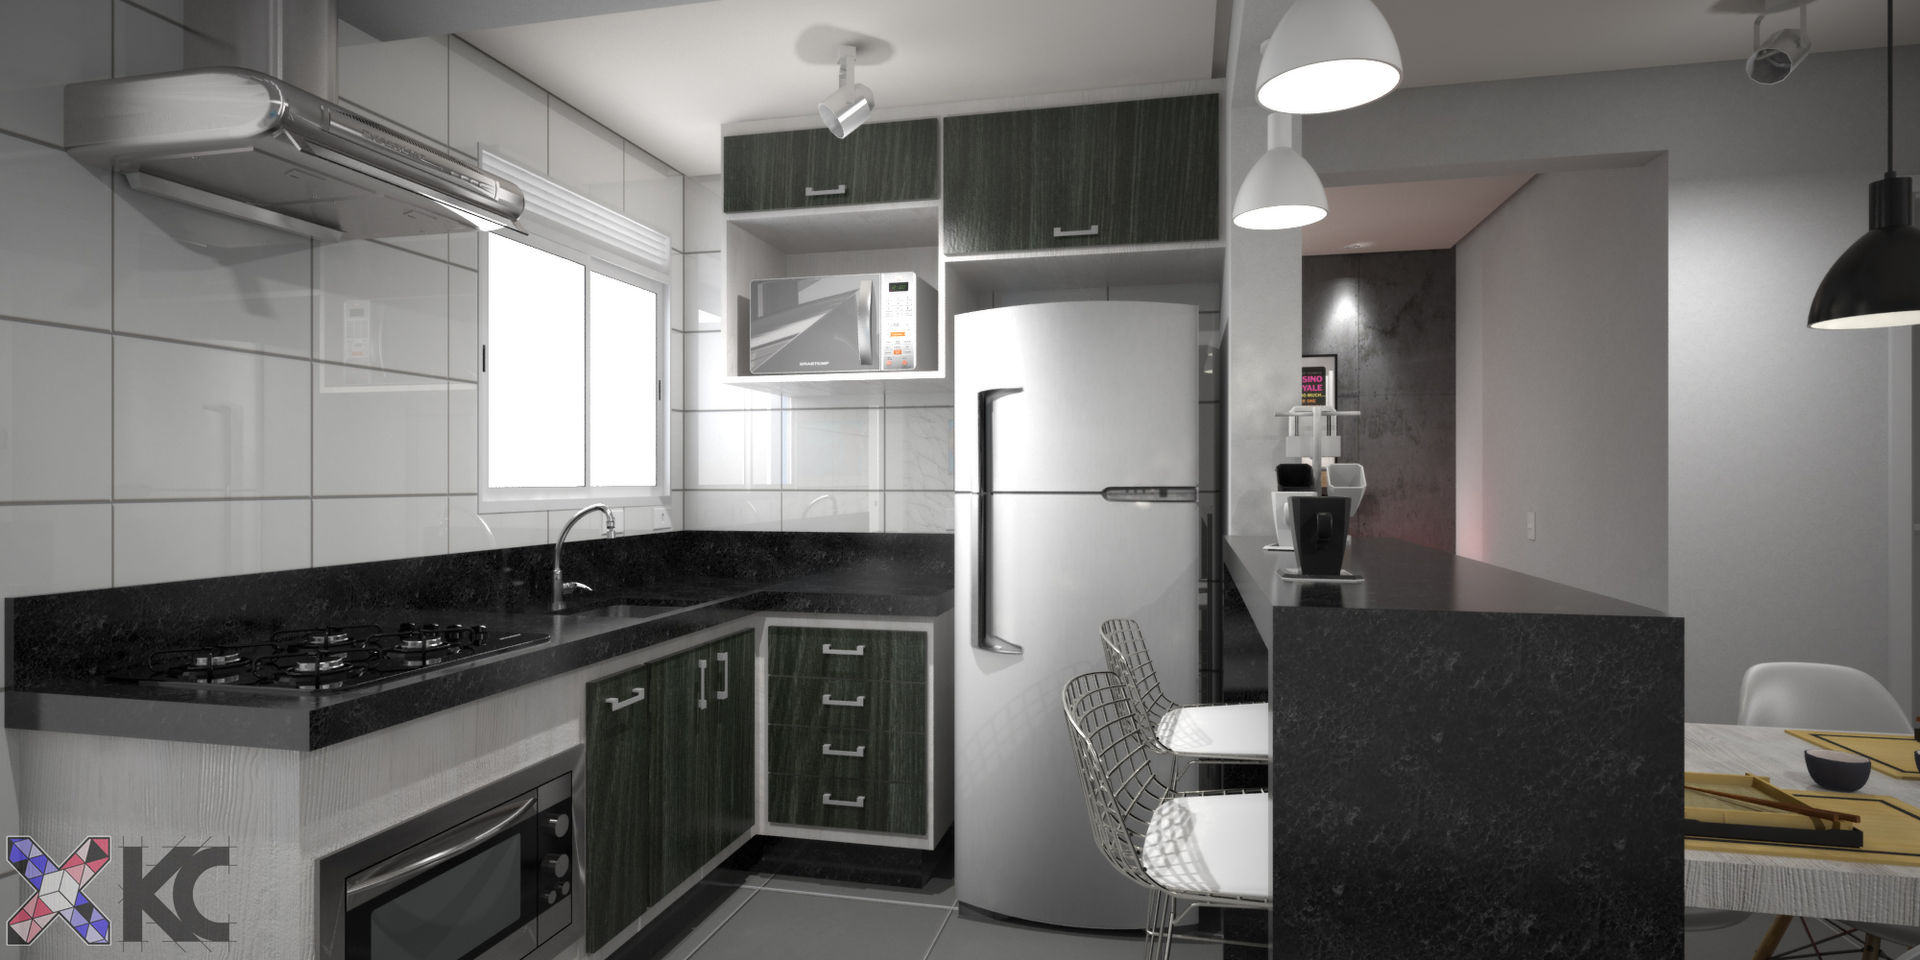 Apartamento VA, KC ARQUITETURA urbanismo e design KC ARQUITETURA urbanismo e design Modern style kitchen